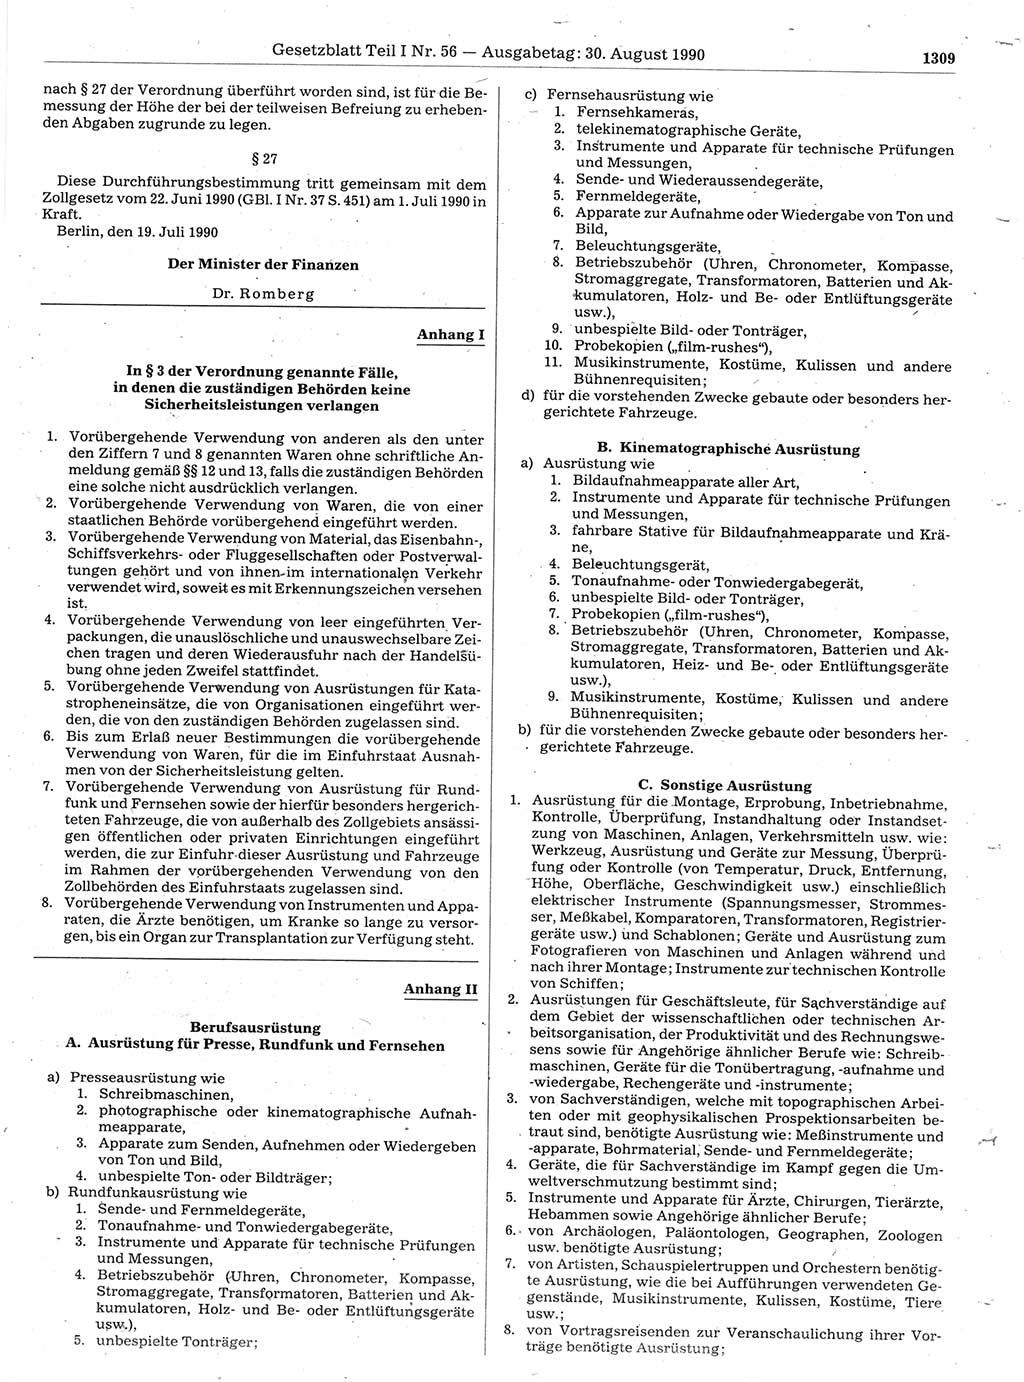 Gesetzblatt (GBl.) der Deutschen Demokratischen Republik (DDR) Teil Ⅰ 1990, Seite 1309 (GBl. DDR Ⅰ 1990, S. 1309)